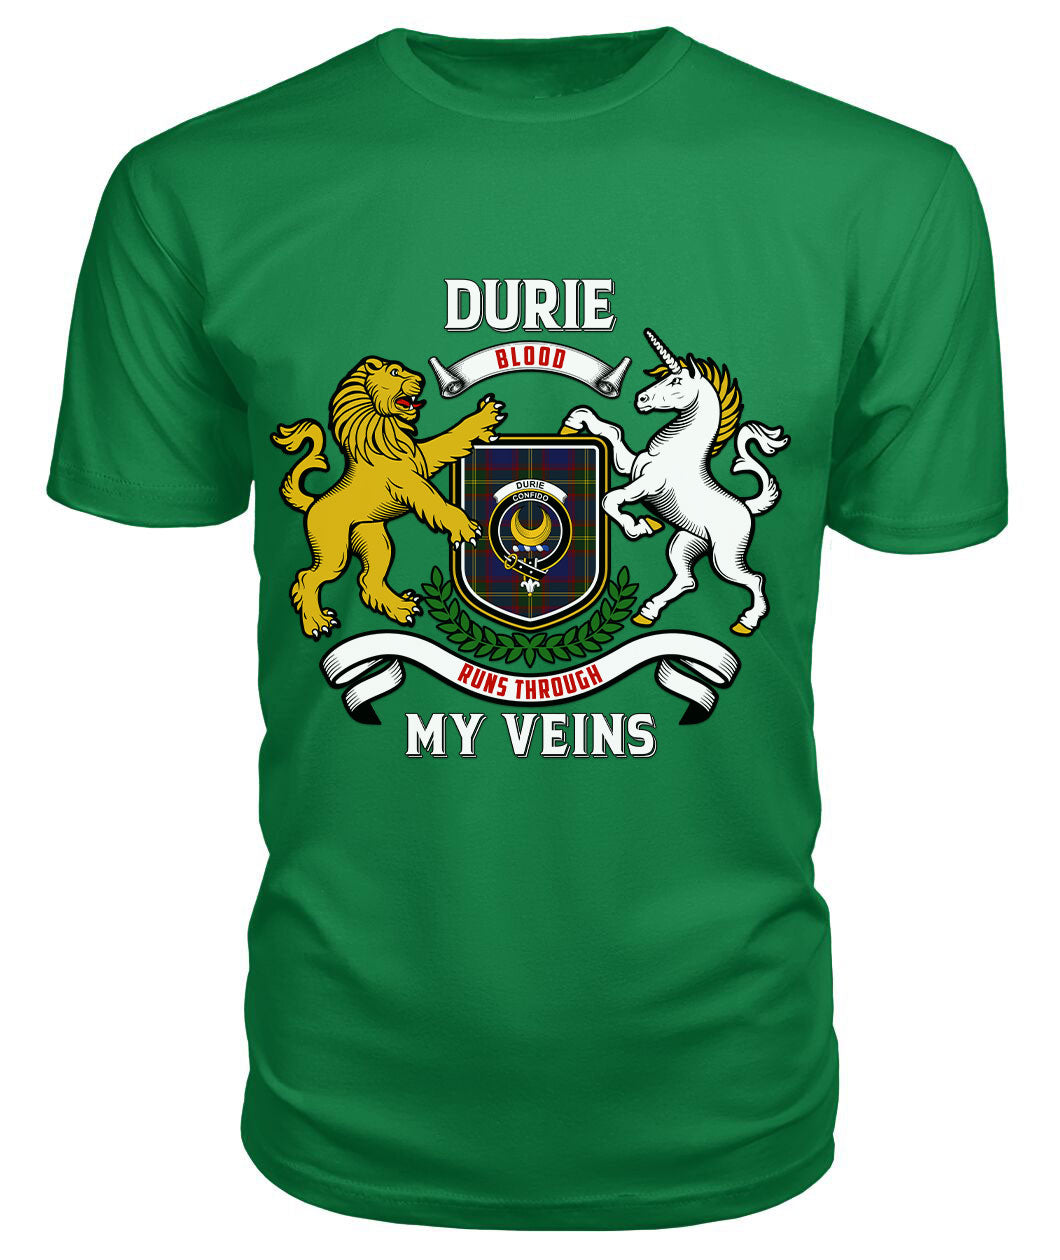 Durie Tartan Crest 2D T-shirt - Blood Runs Through My Veins Style